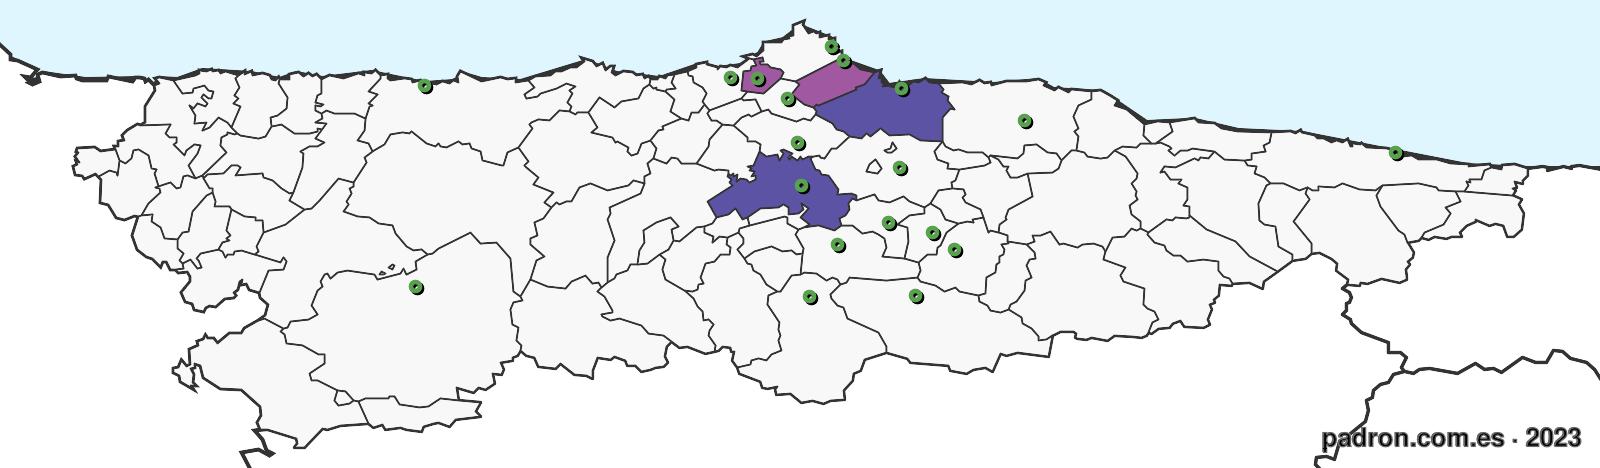 haitianos en asturias.